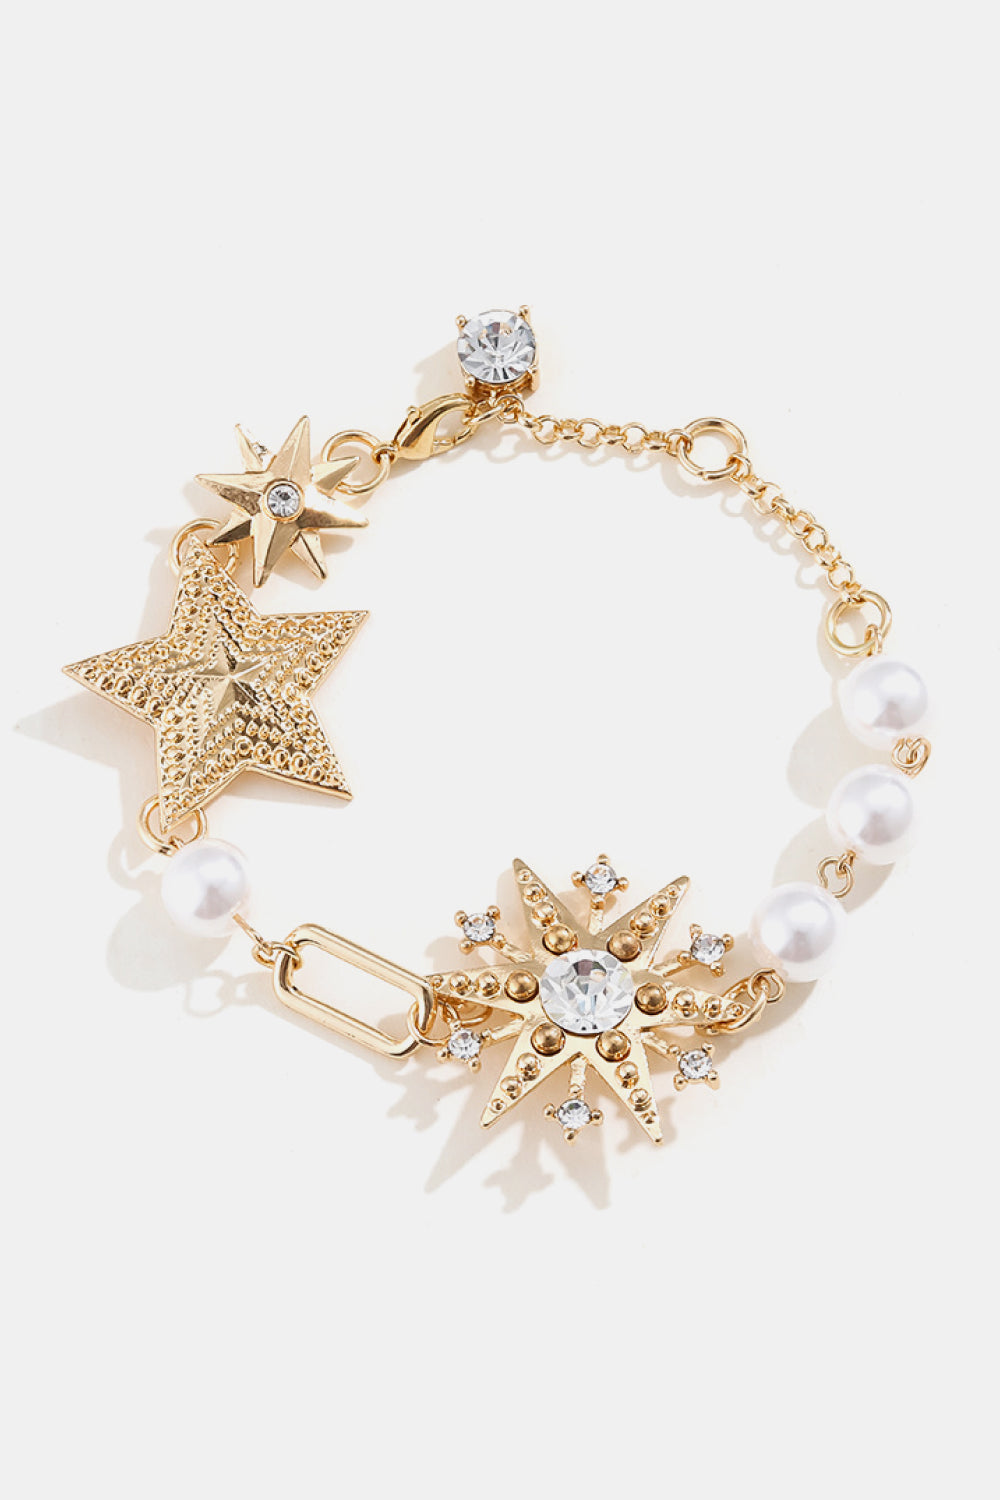 Synthetic Pearl Star Shape Alloy Bracelet - Gold / One Size - Women’s Jewelry - Bracelets - 1 - 2024